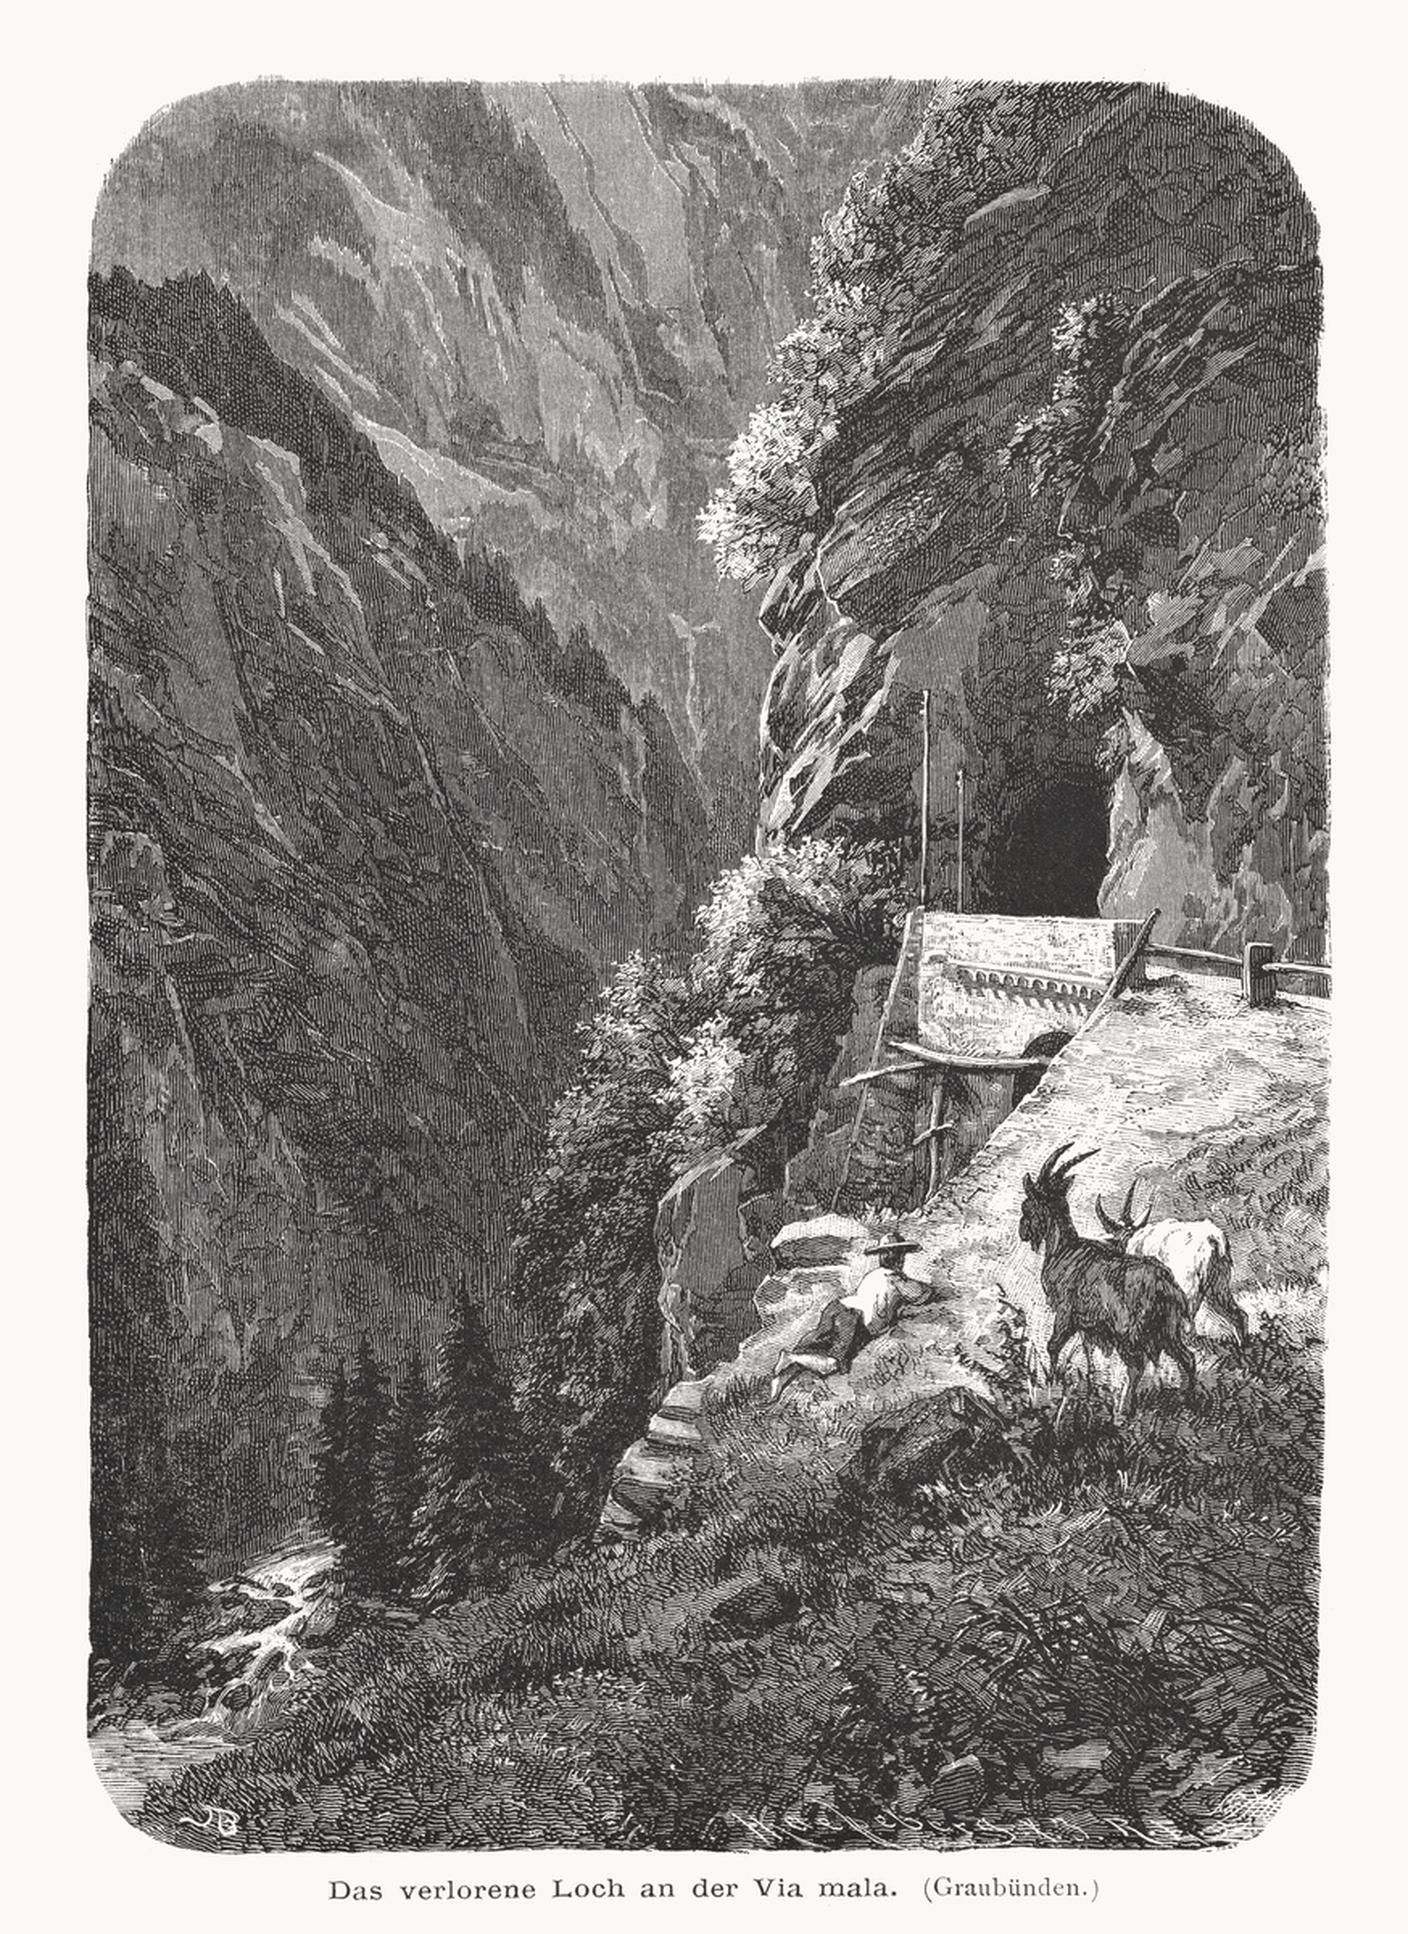 iStock-Viamala, Cantone dei Grigioni, Svizzera, incisione xilografica, pubblicata nel 1877.jpg